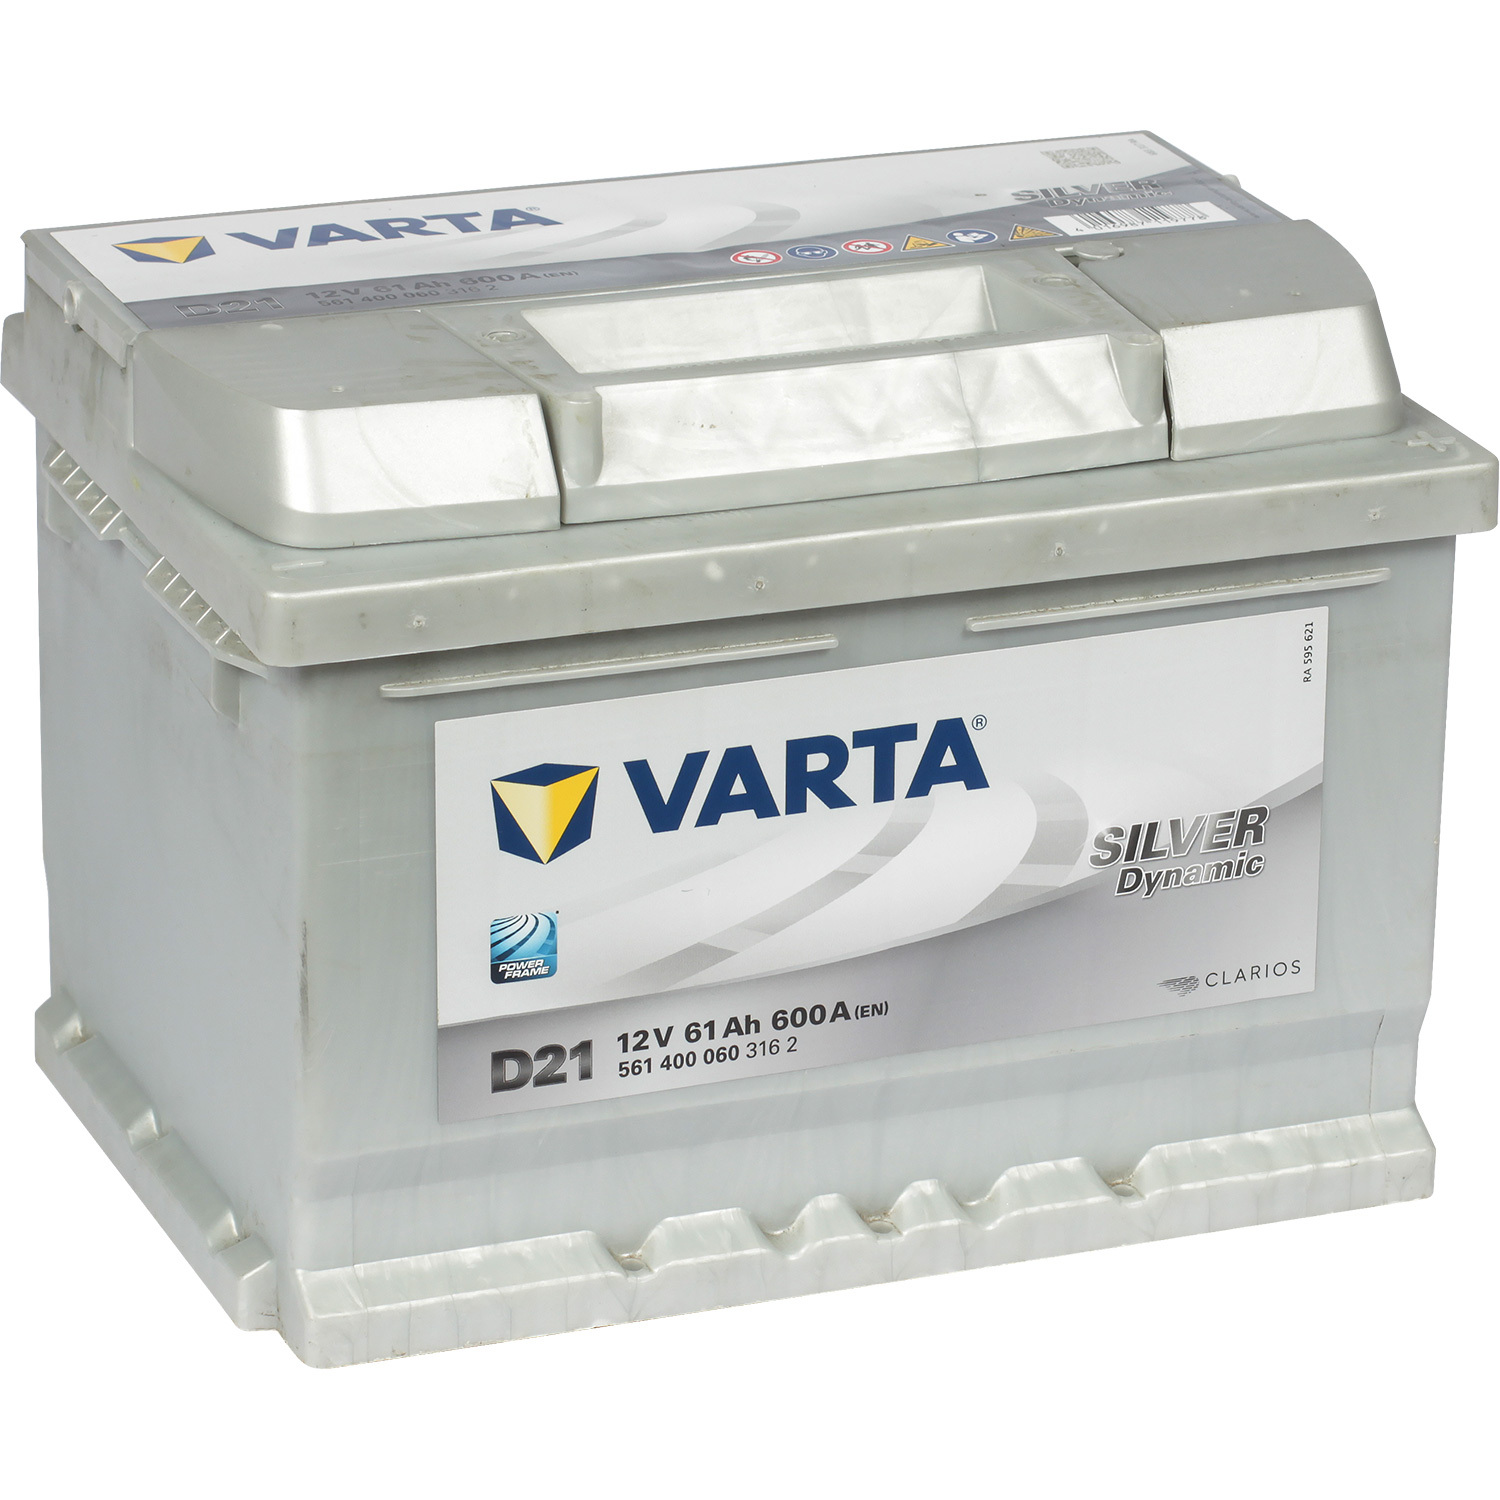 Varta Автомобильный аккумулятор Varta Silver Dynamic 561 400 060 61 Ач обратная полярность LB2 цена и фото